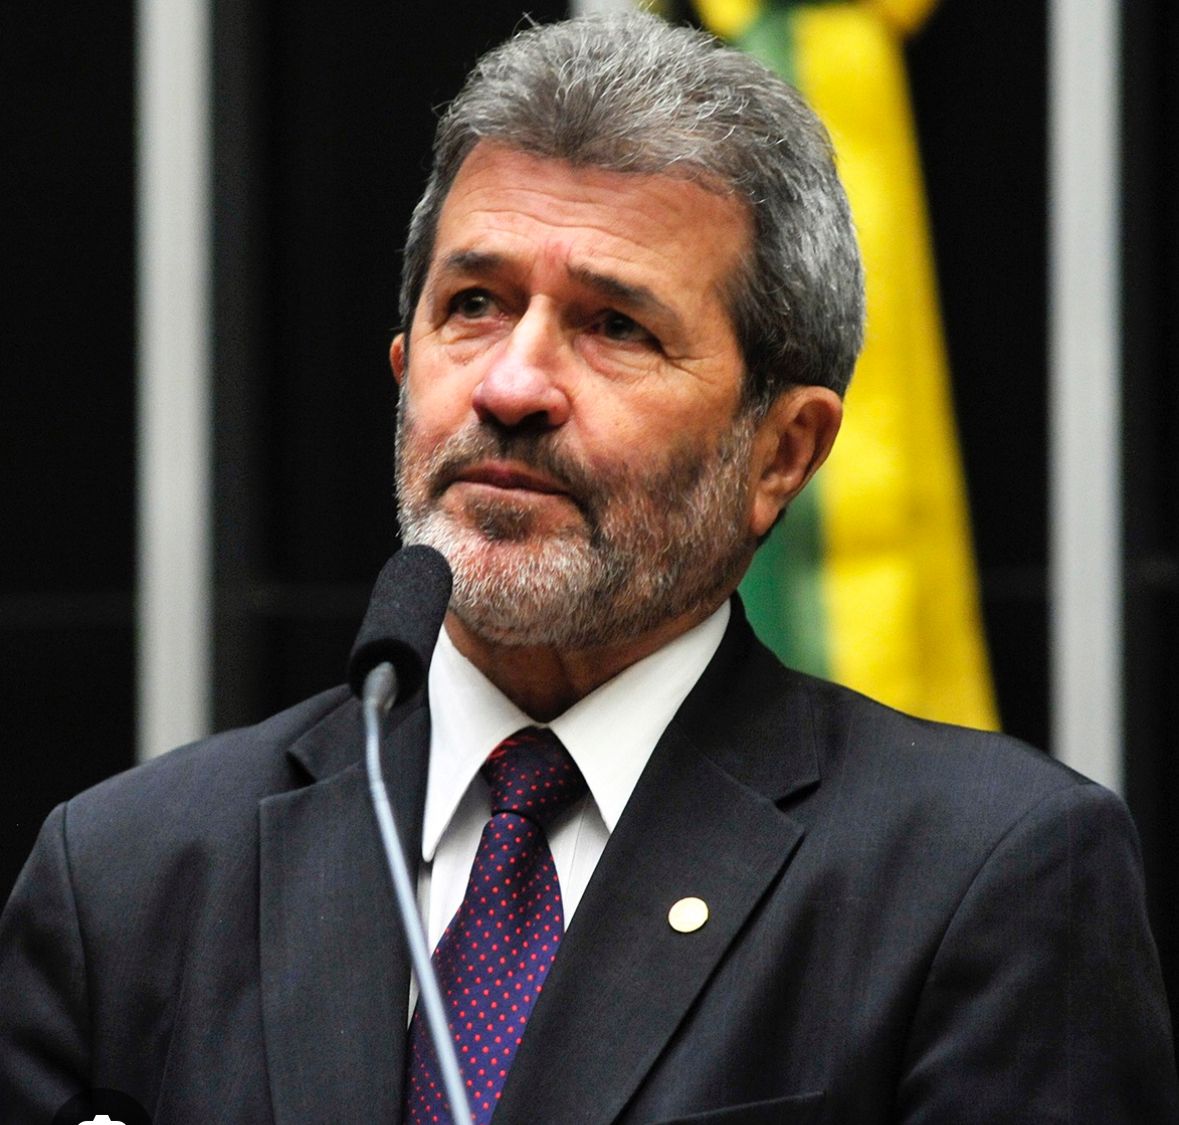  Gonzaga Patriota, ex-deputado federal constituinte, será homenageado com título de Cidadão do Recife